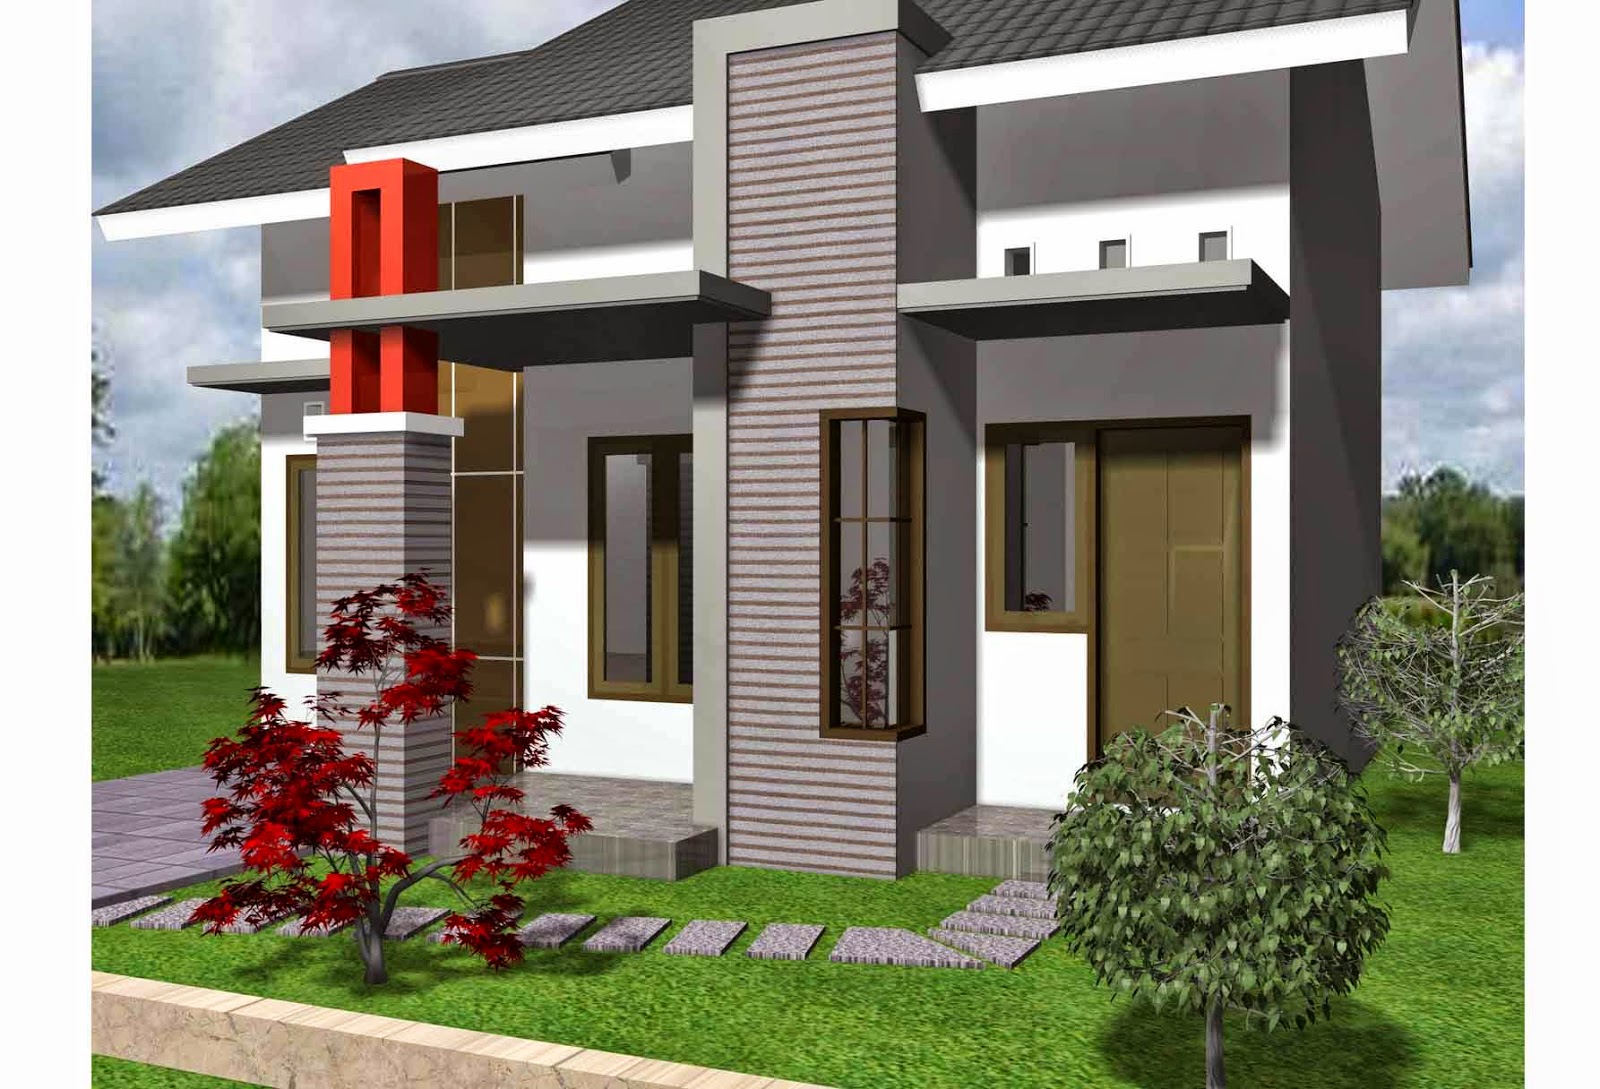 Desain Rumah Minimalis Modern 1 Lantai 2018 Desain Rumah Minimalis